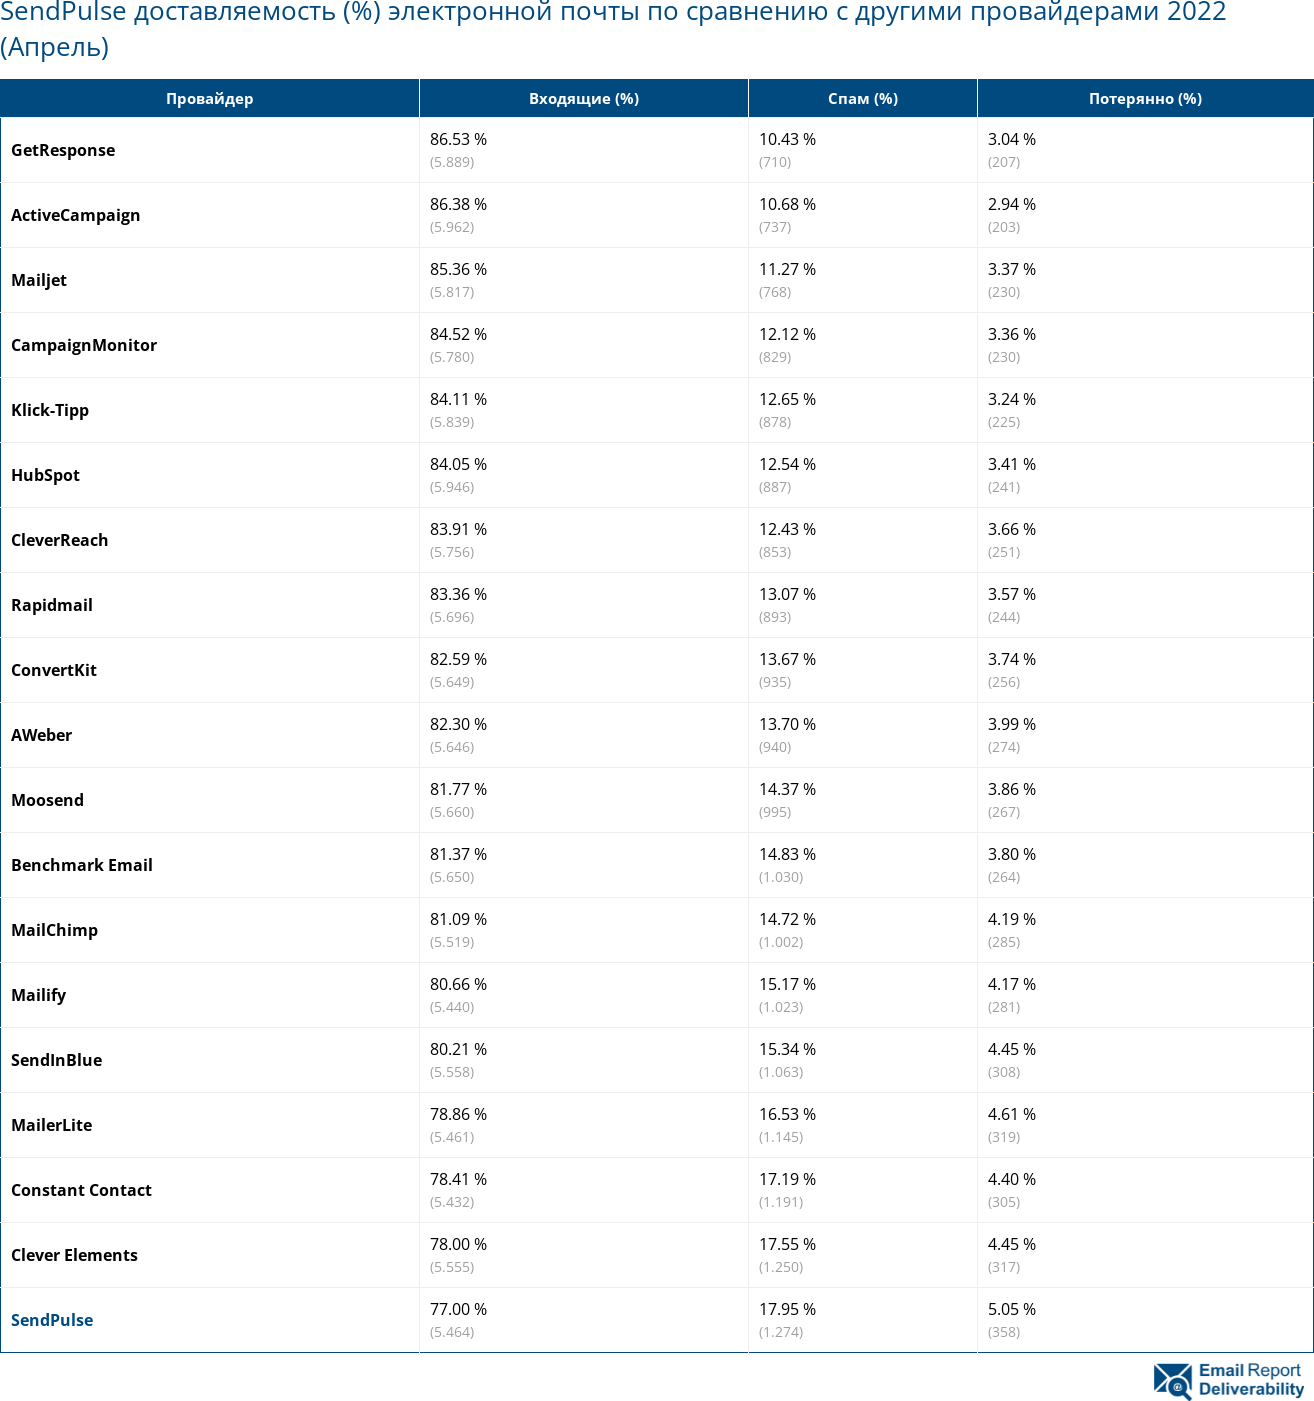 SendPulse доставляемость (%) электронной почты по сравнению с другими провайдерами 2022 (Апрель)